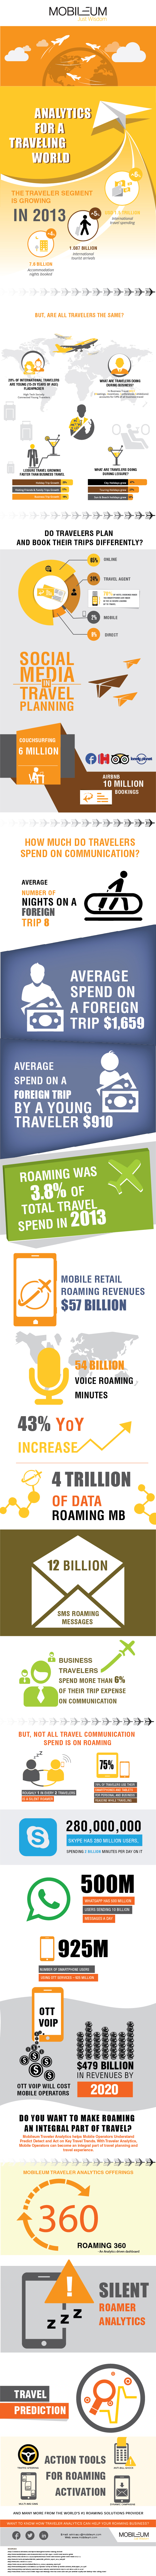 Insight on international travel, mobile data, roaming revenue-Mobileum